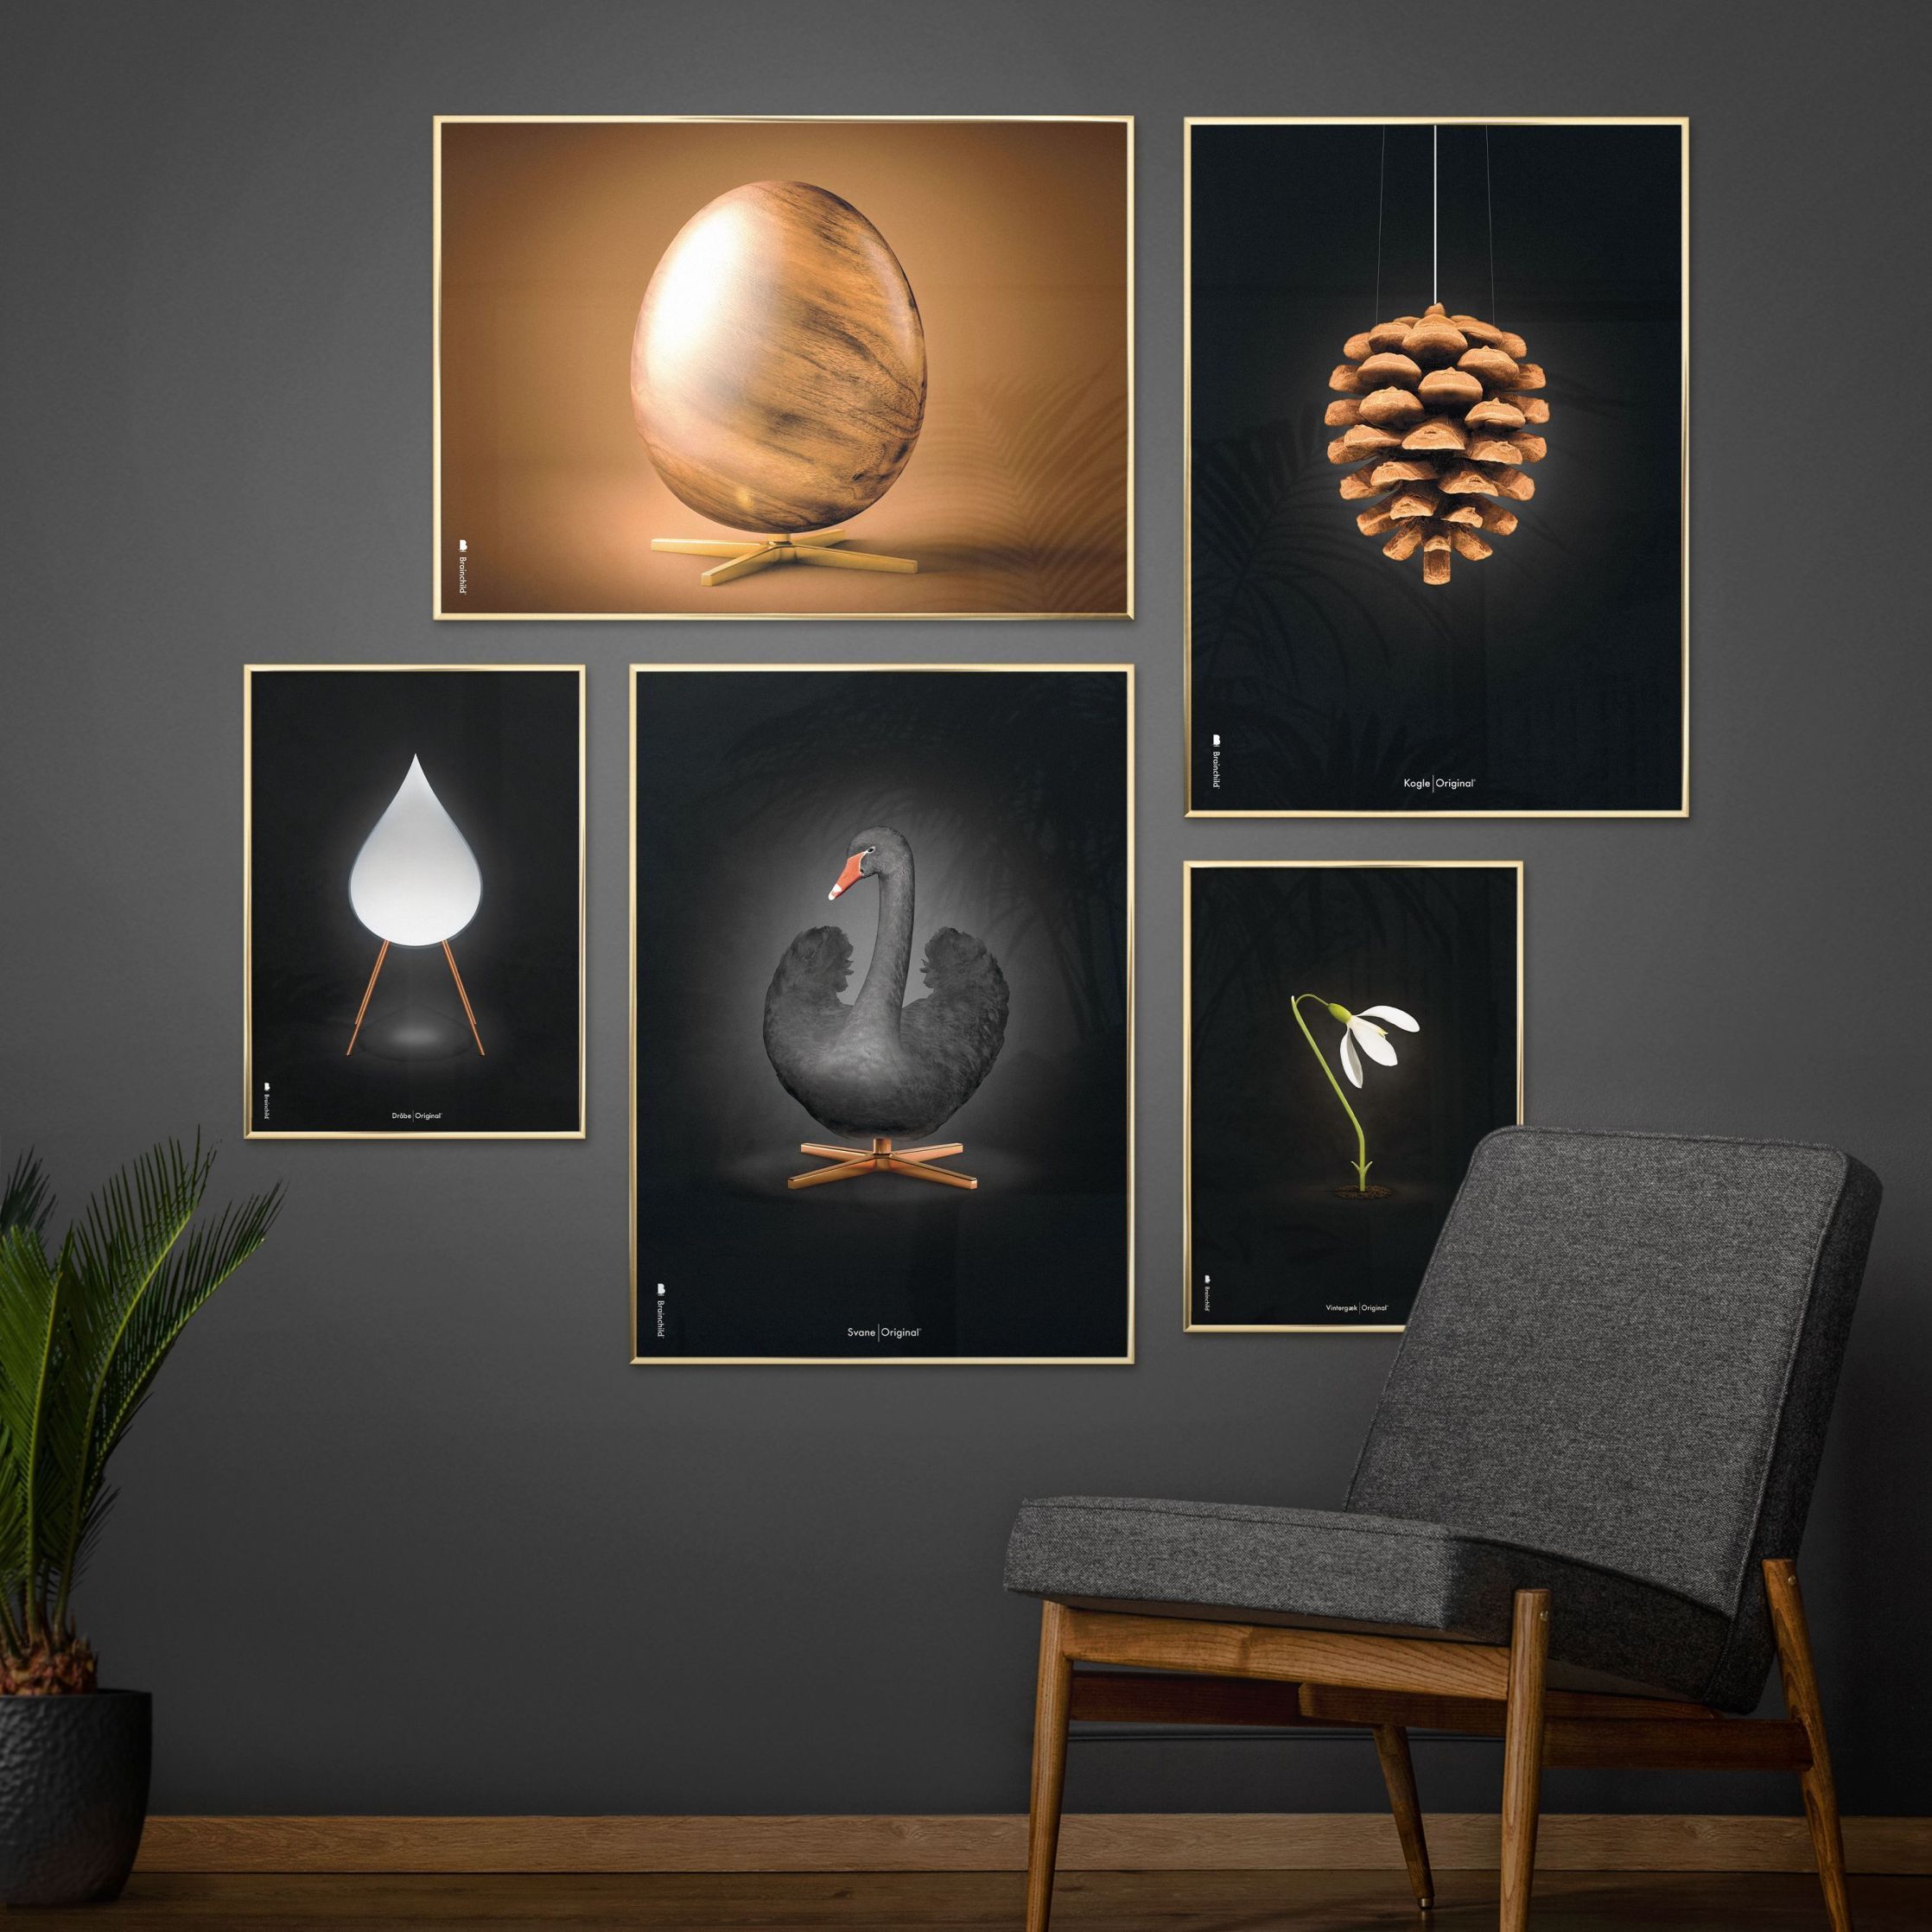 Pomysły Swan Classic Plakat, rama wykonana z ciemnego drewna 50x70 cm, czarne/czarne tło